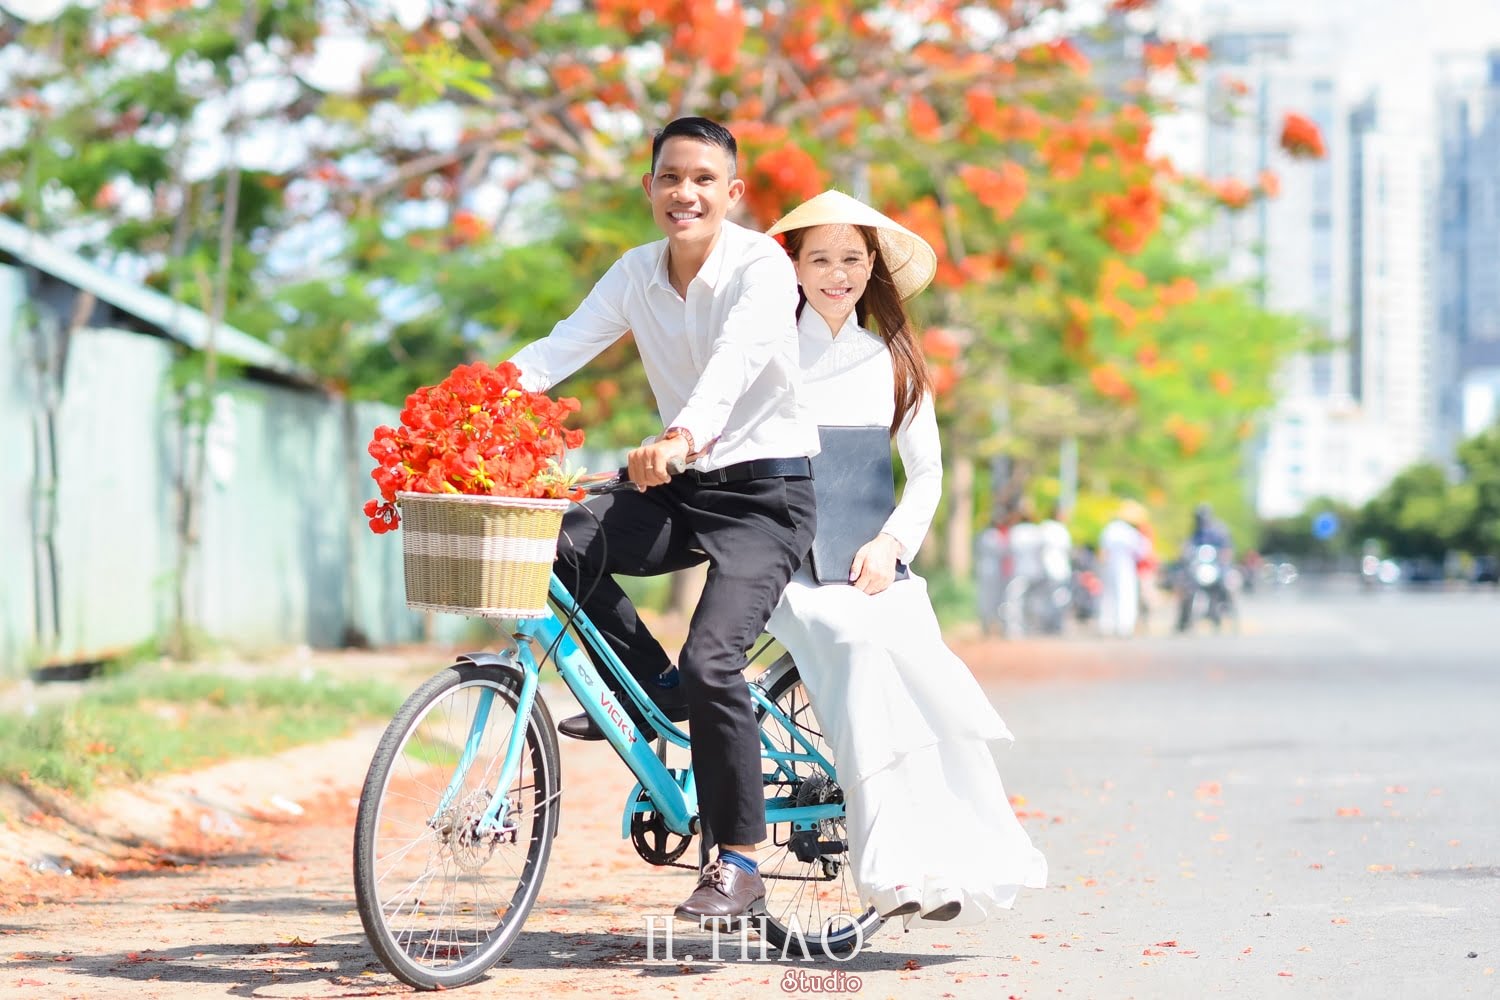 Anh hoa phuong 4 min - Bộ ảnh couple chụp với hoa phượng tuyệt đẹp - HThao Studio